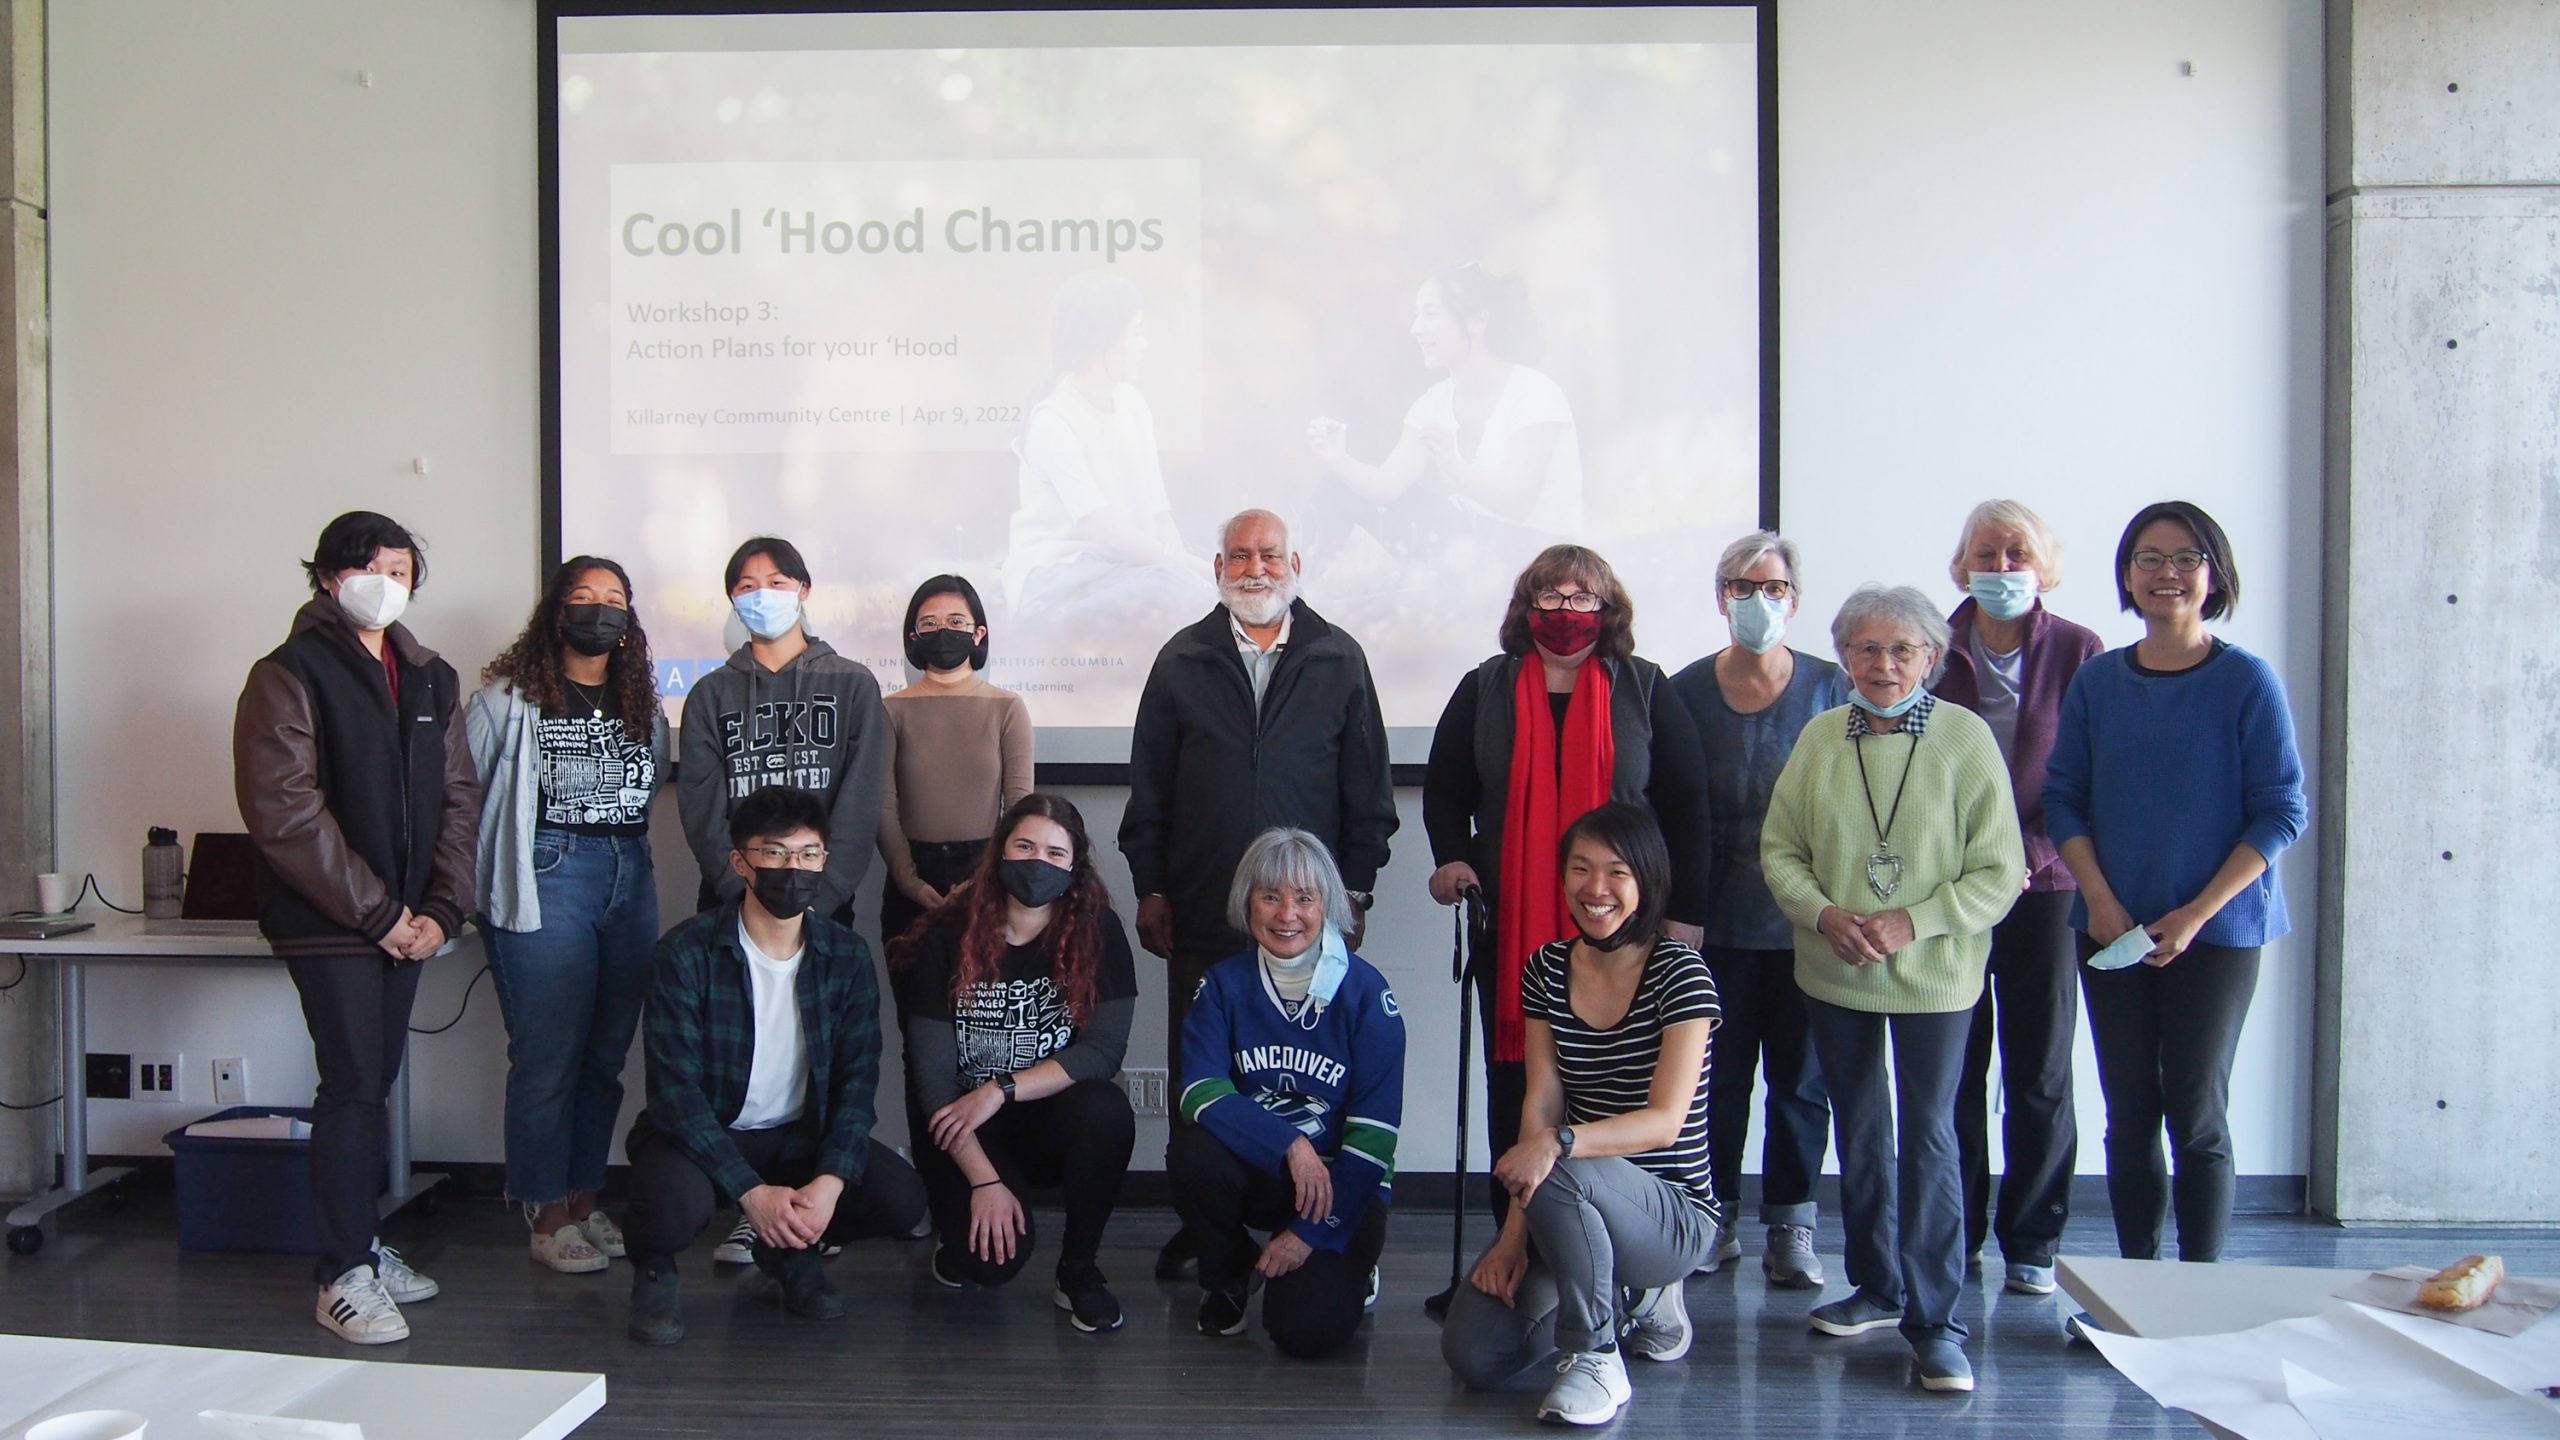 Cool ‘Hood Champs